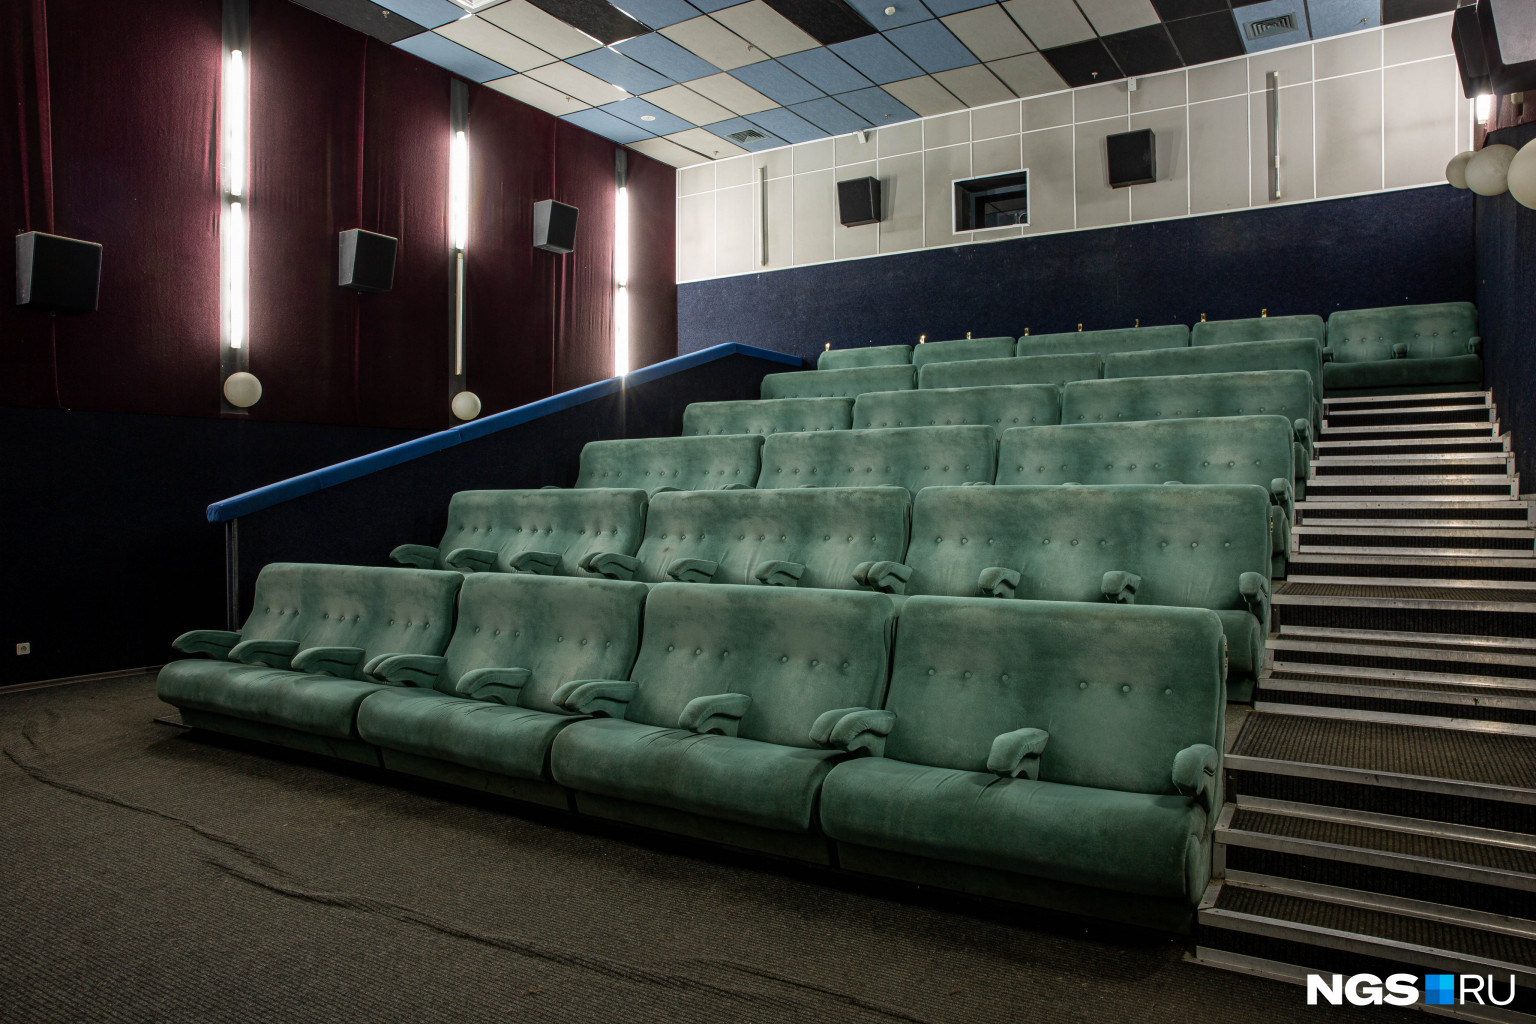 Залы кинотеатра «Седьмое небо», который находится в торговом центре «Калина», ждут посетителей